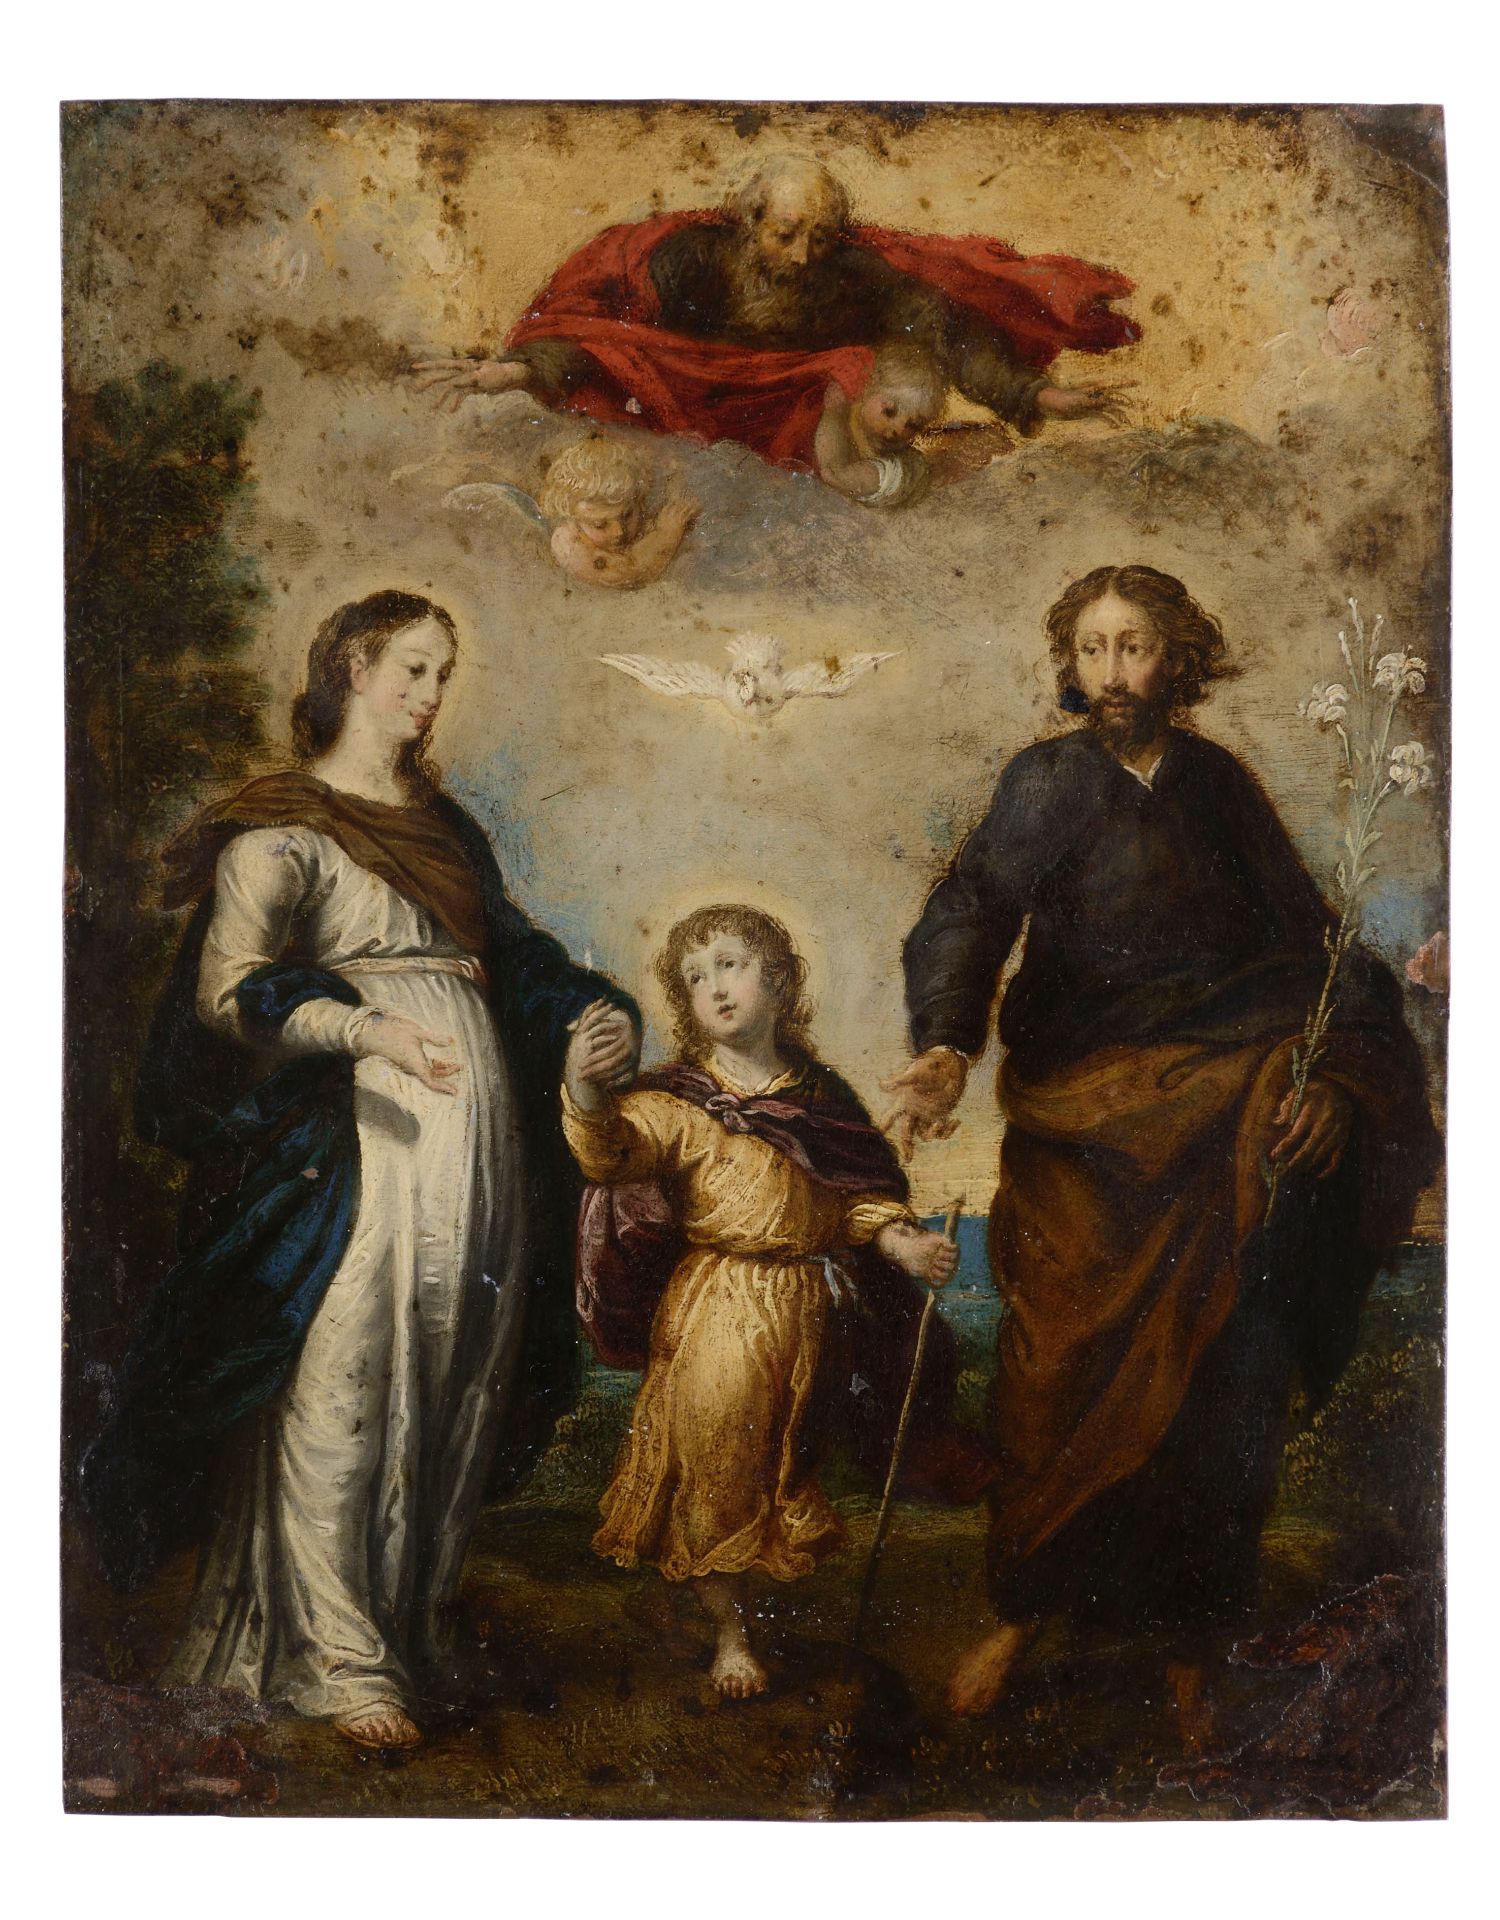 Unbekannter Künstler, 18. Jh., Die himmlische und irdische Dreifaltigkeit: Jesus als zentrale